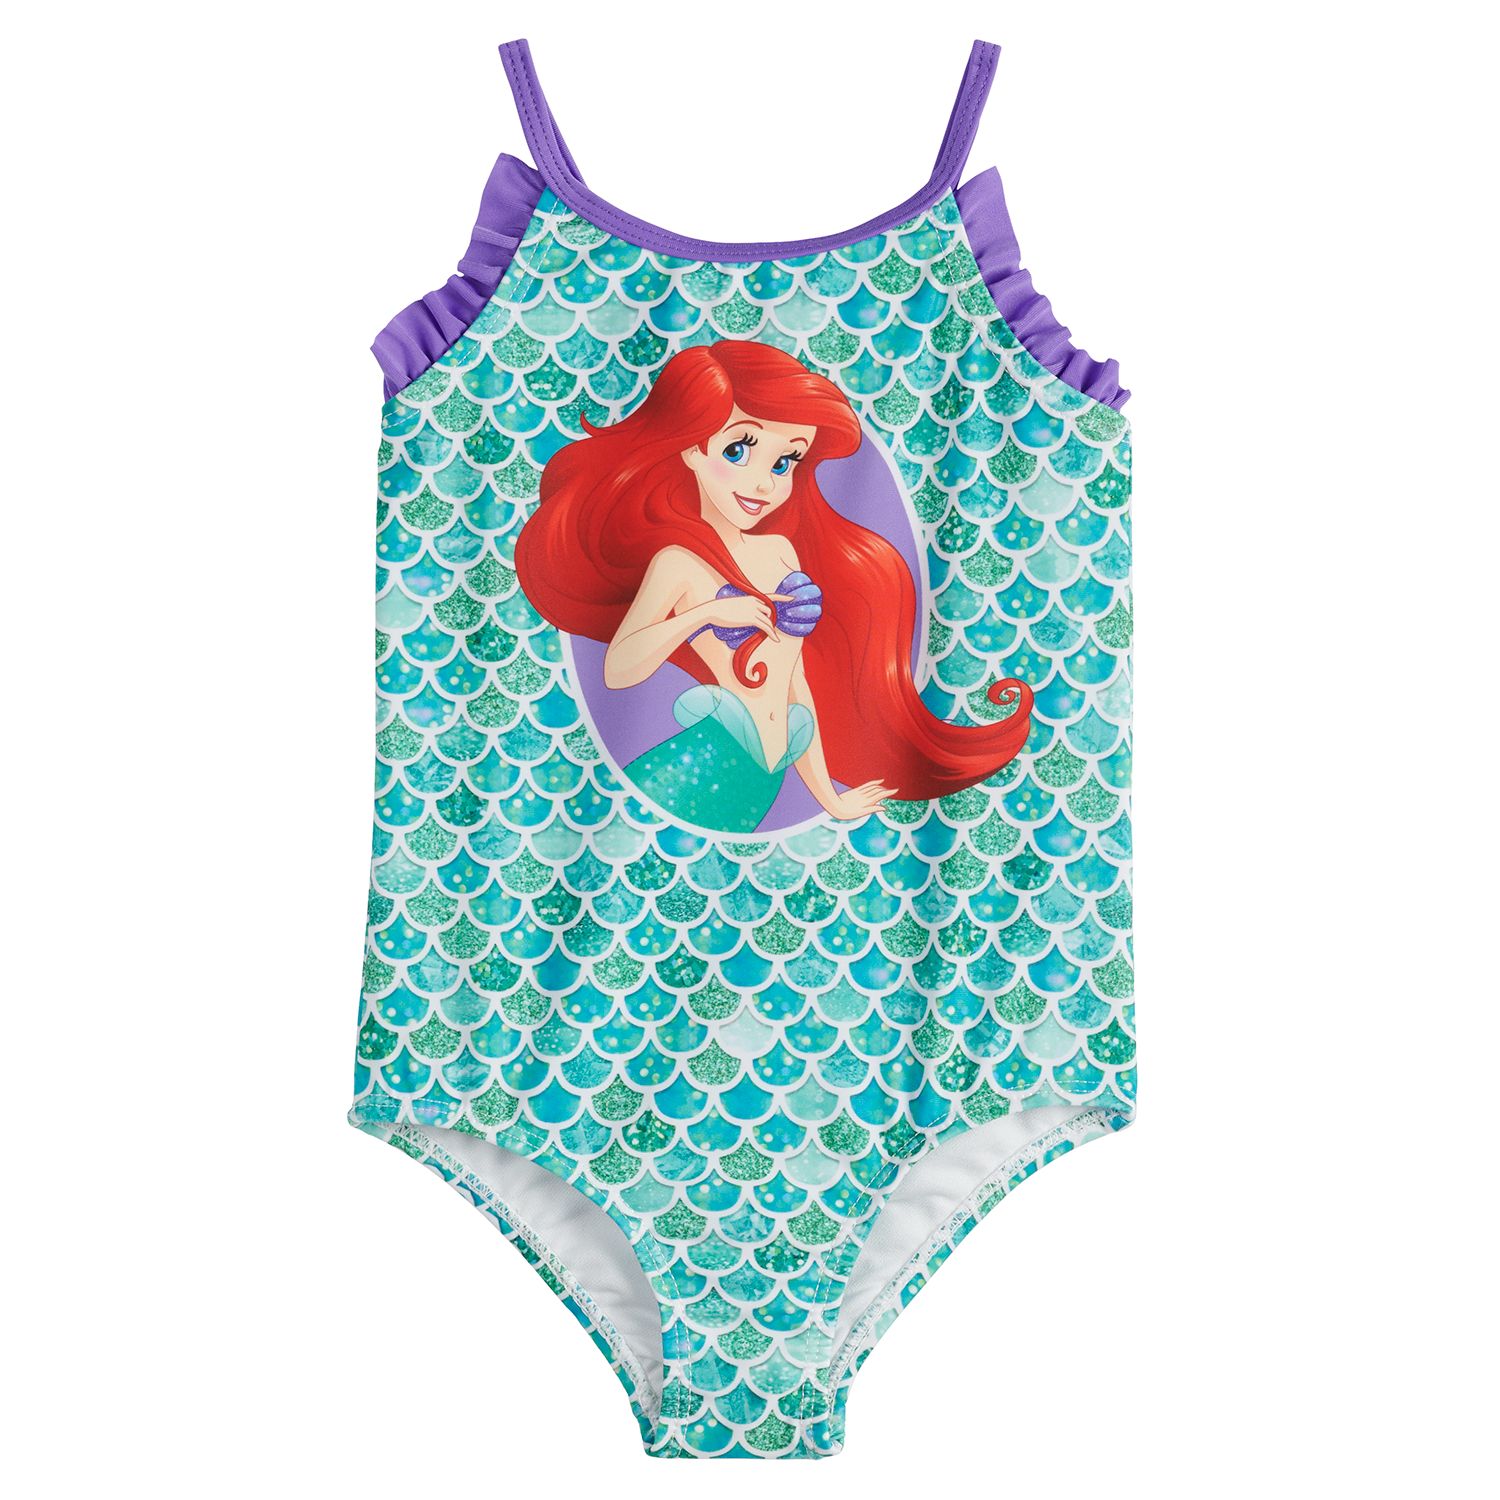 little mermaid one piece swimsuit